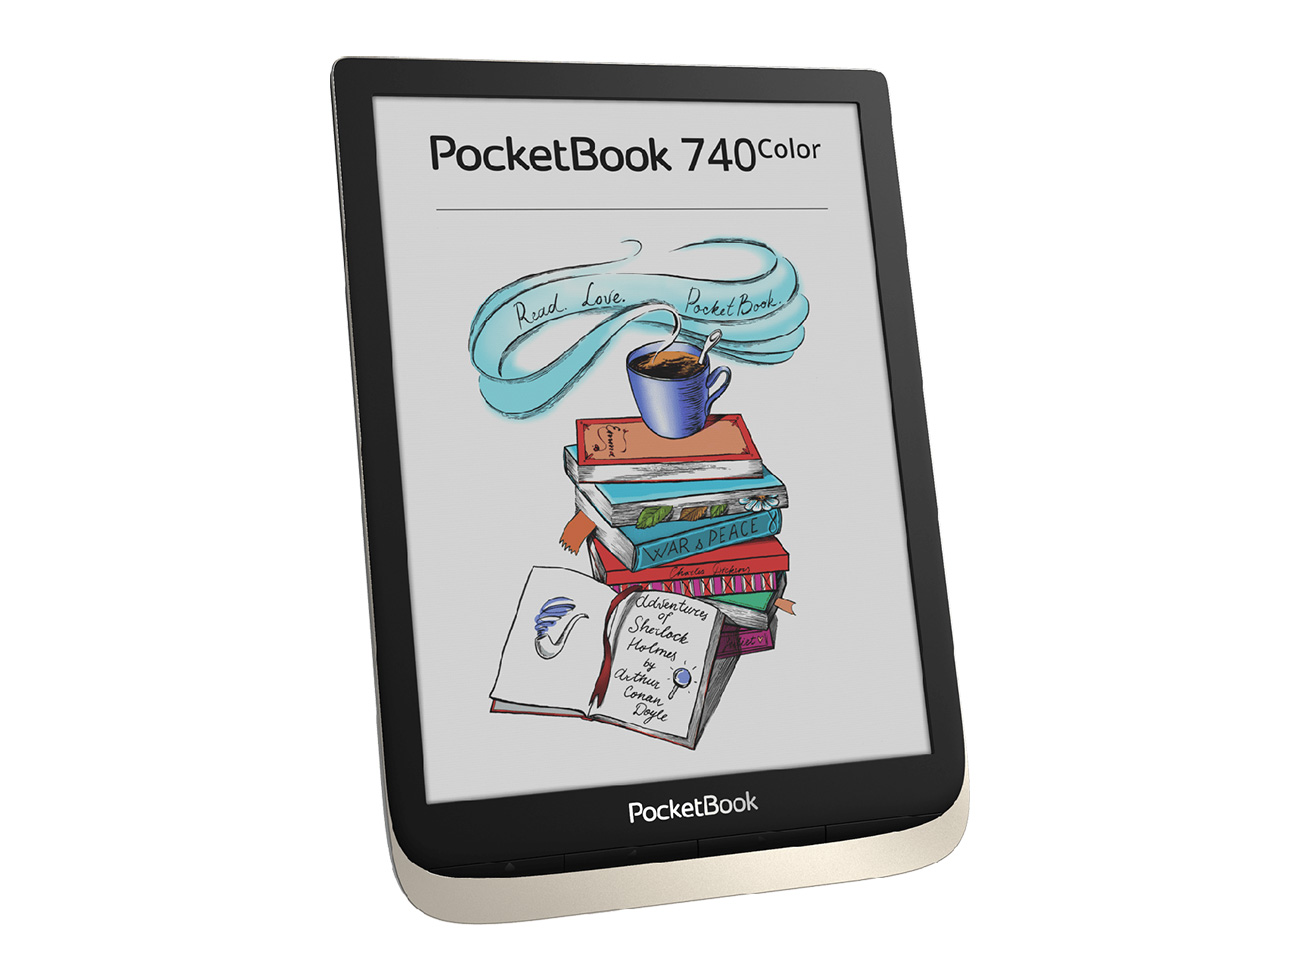 Новый 7,8-дюймовый ридер PocketBook 740 Color оснащен экраном E Ink new Kaleido